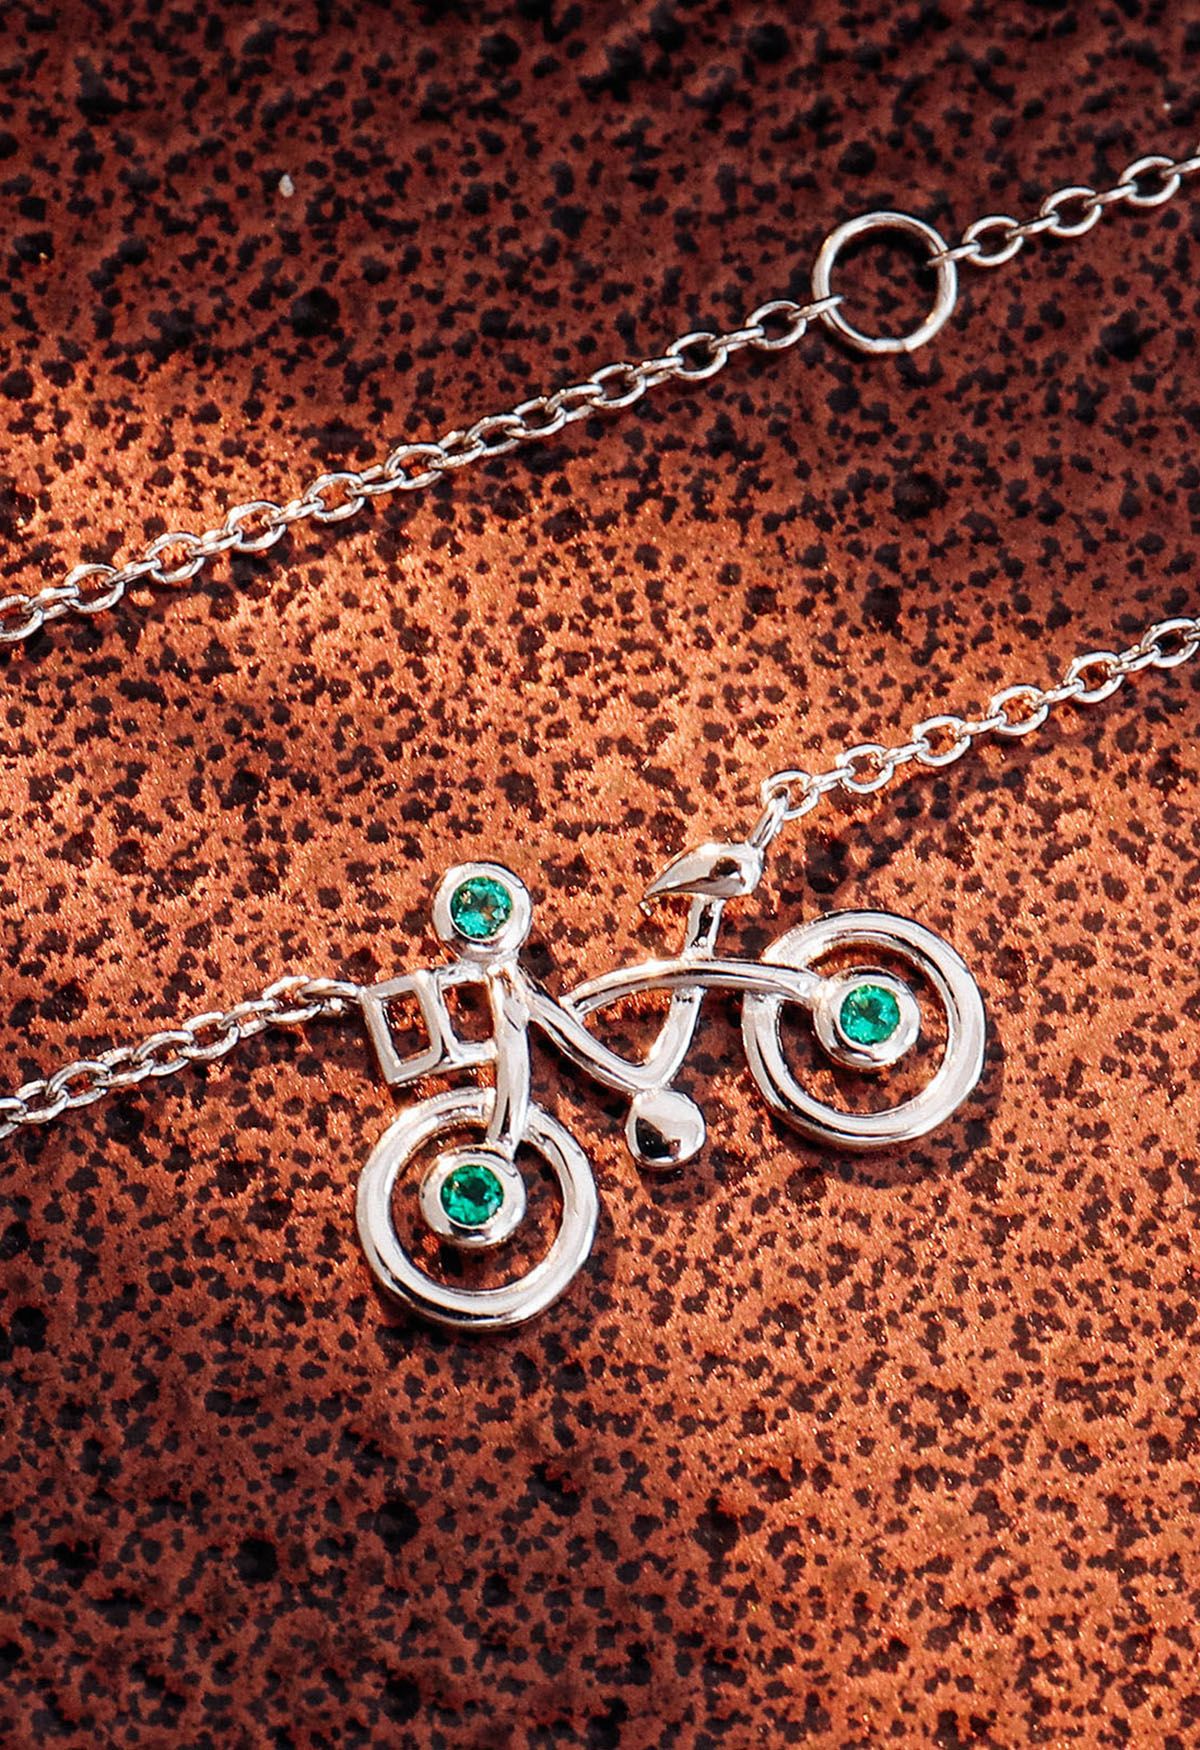 Colar de pedra esmeralda em formato de bicicleta